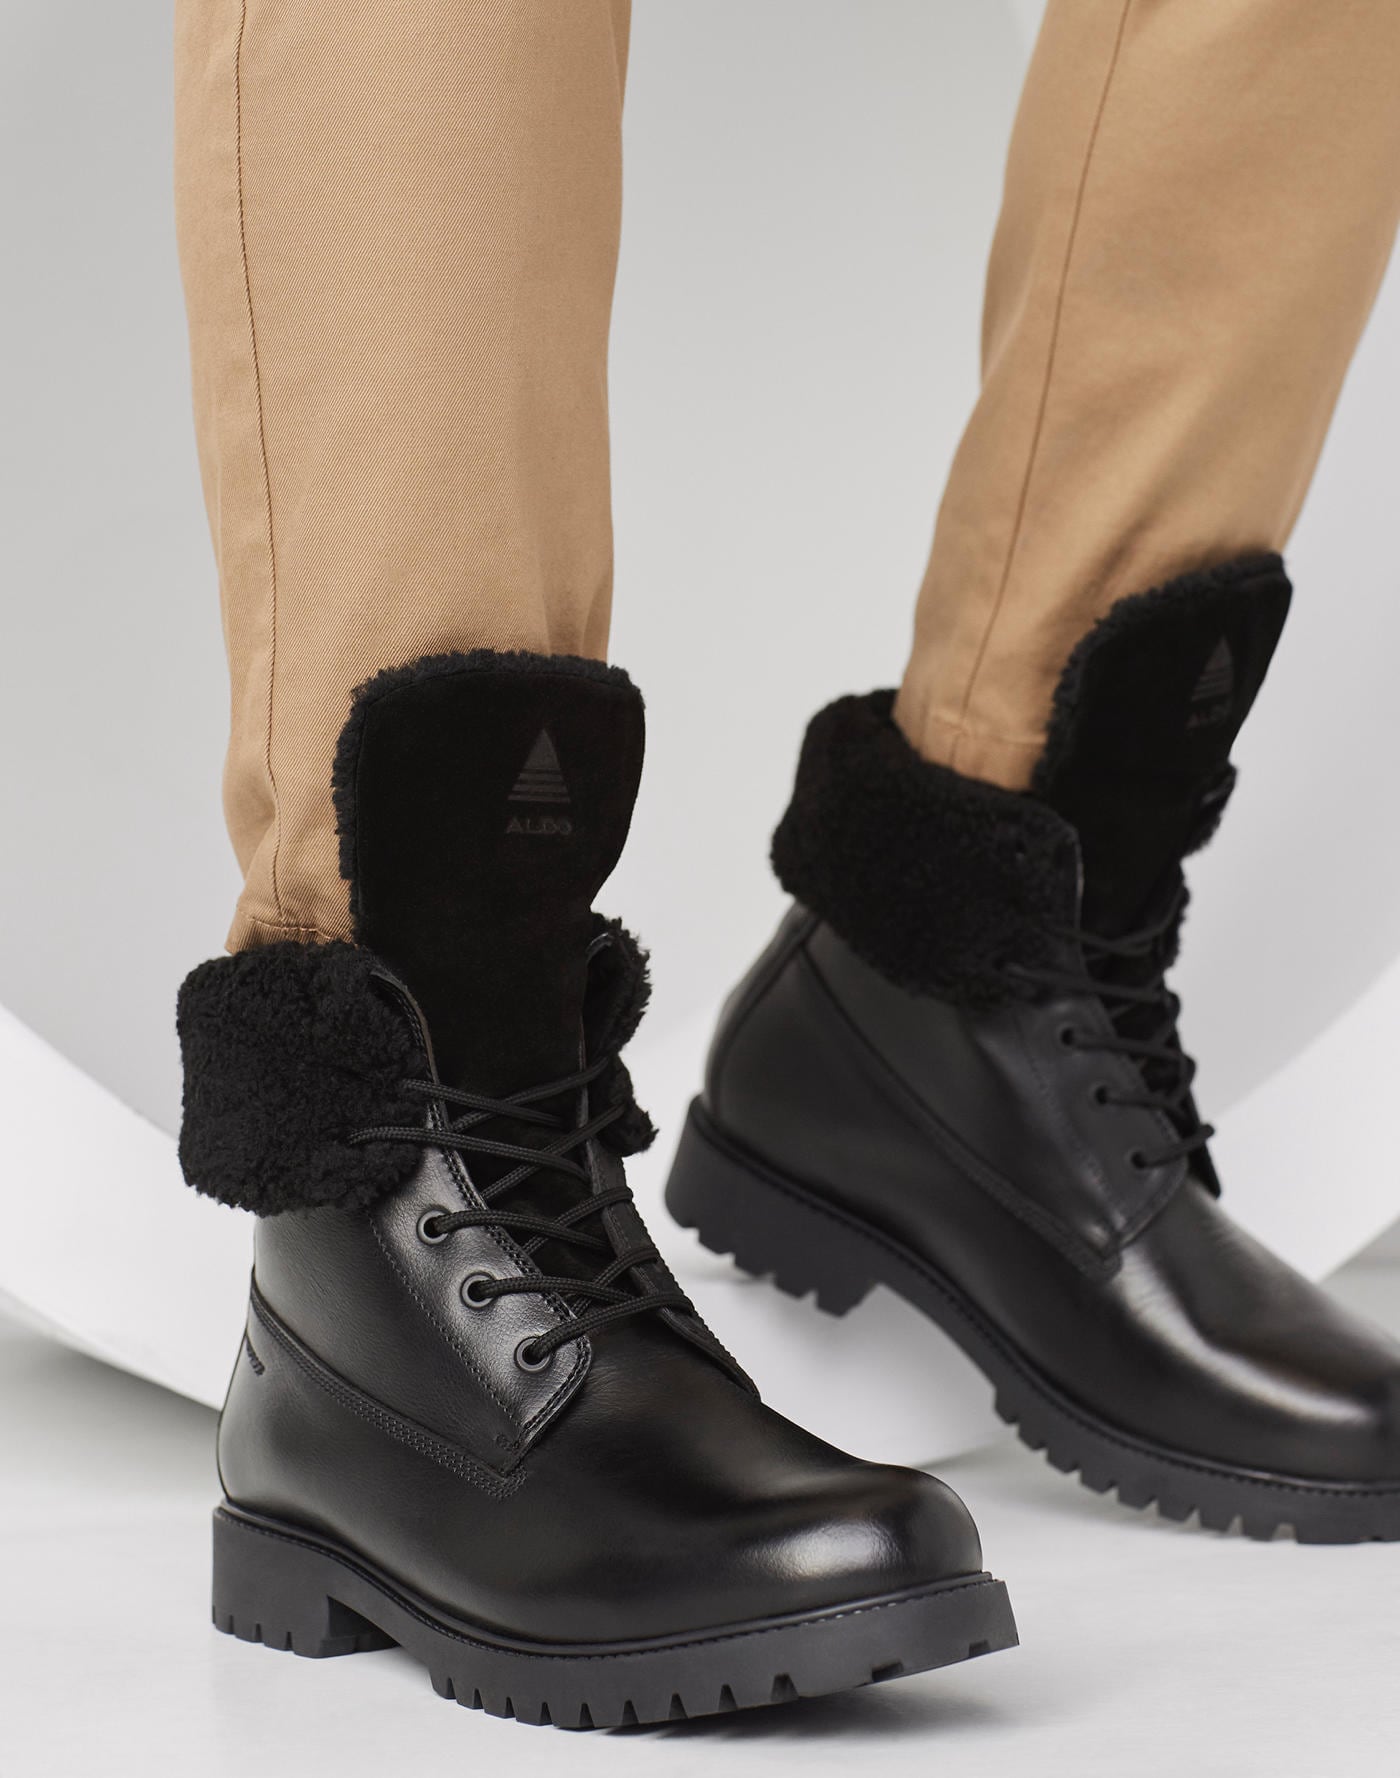 aldo winter boots